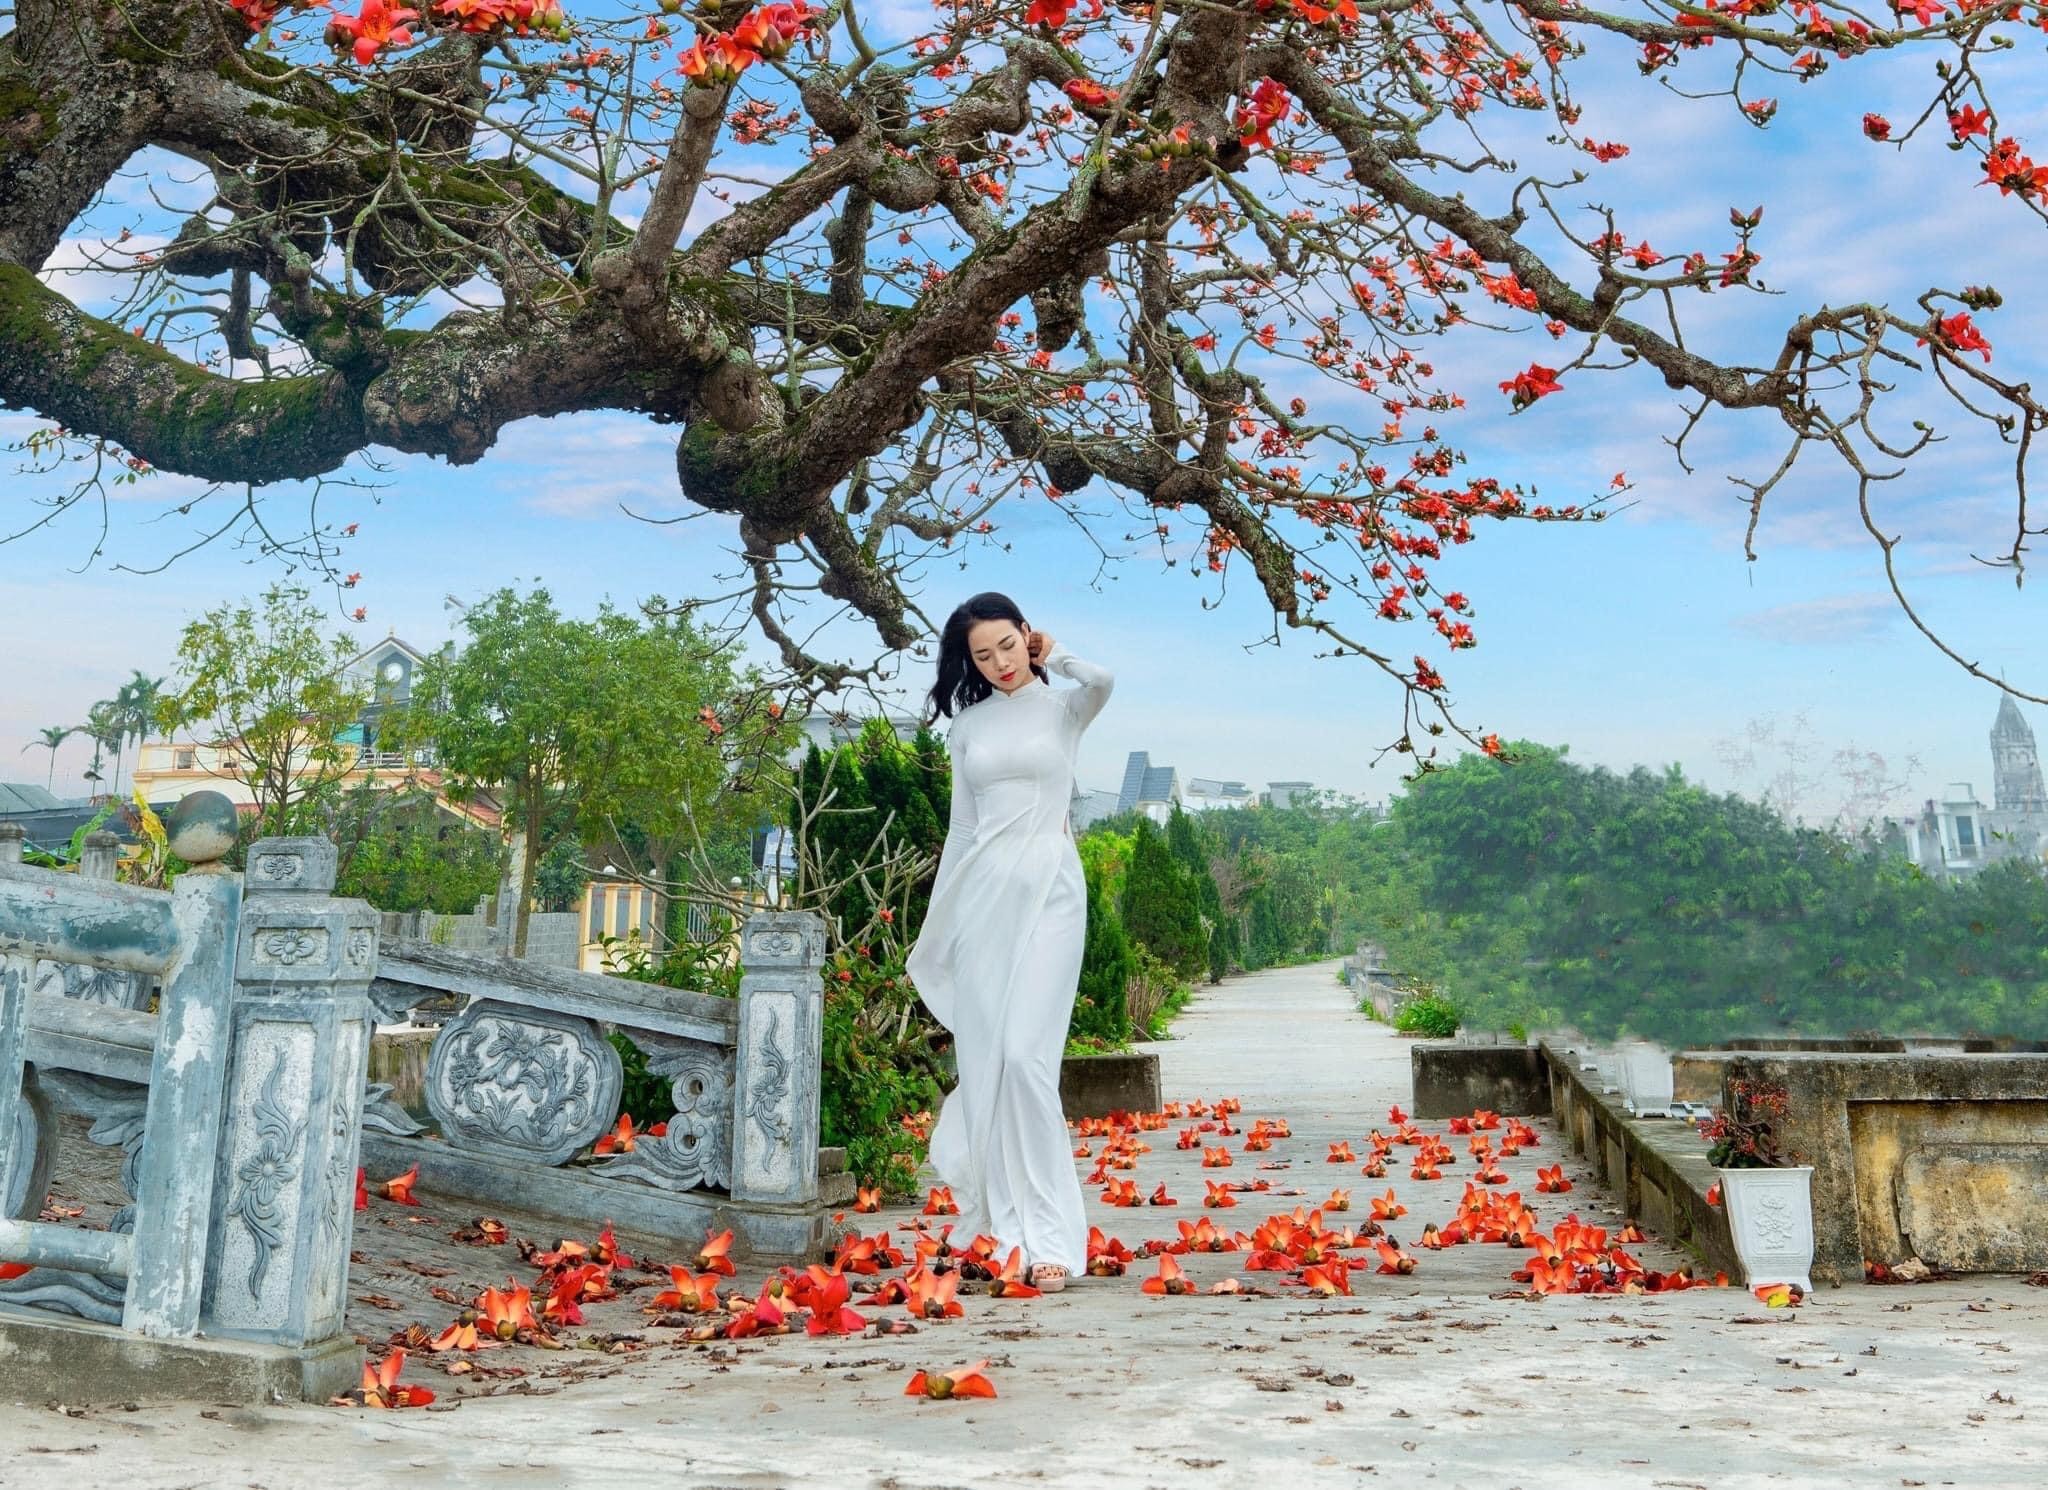 Bộ ảnh đẹp về thiếu nữ bên hoa gạo của nhiếp ảnh gia Cao Sơn - Tạp ...